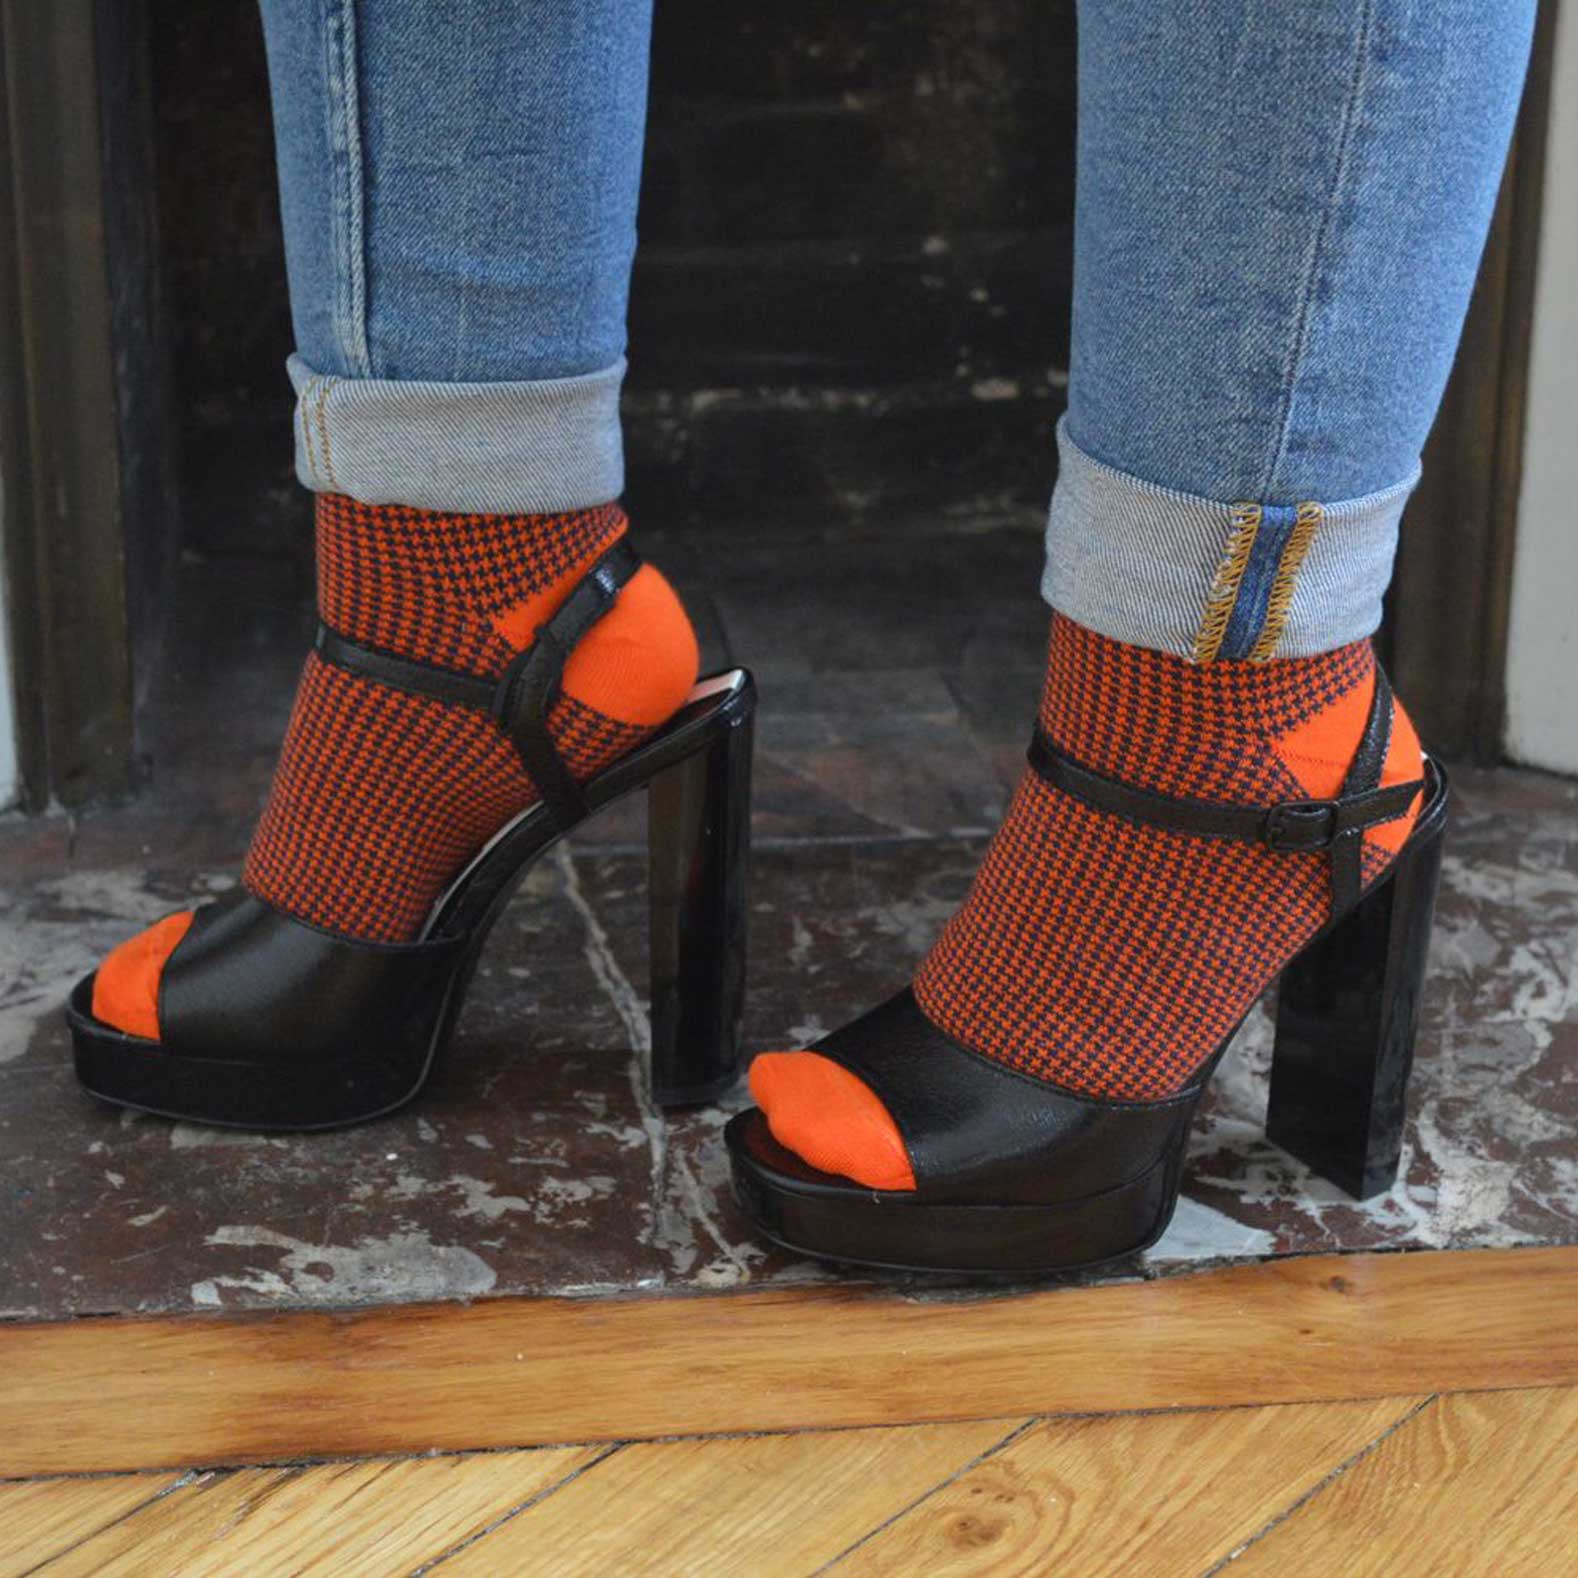 Idée look "chaussettes oranges - talons" pour femmes motif pied de poule